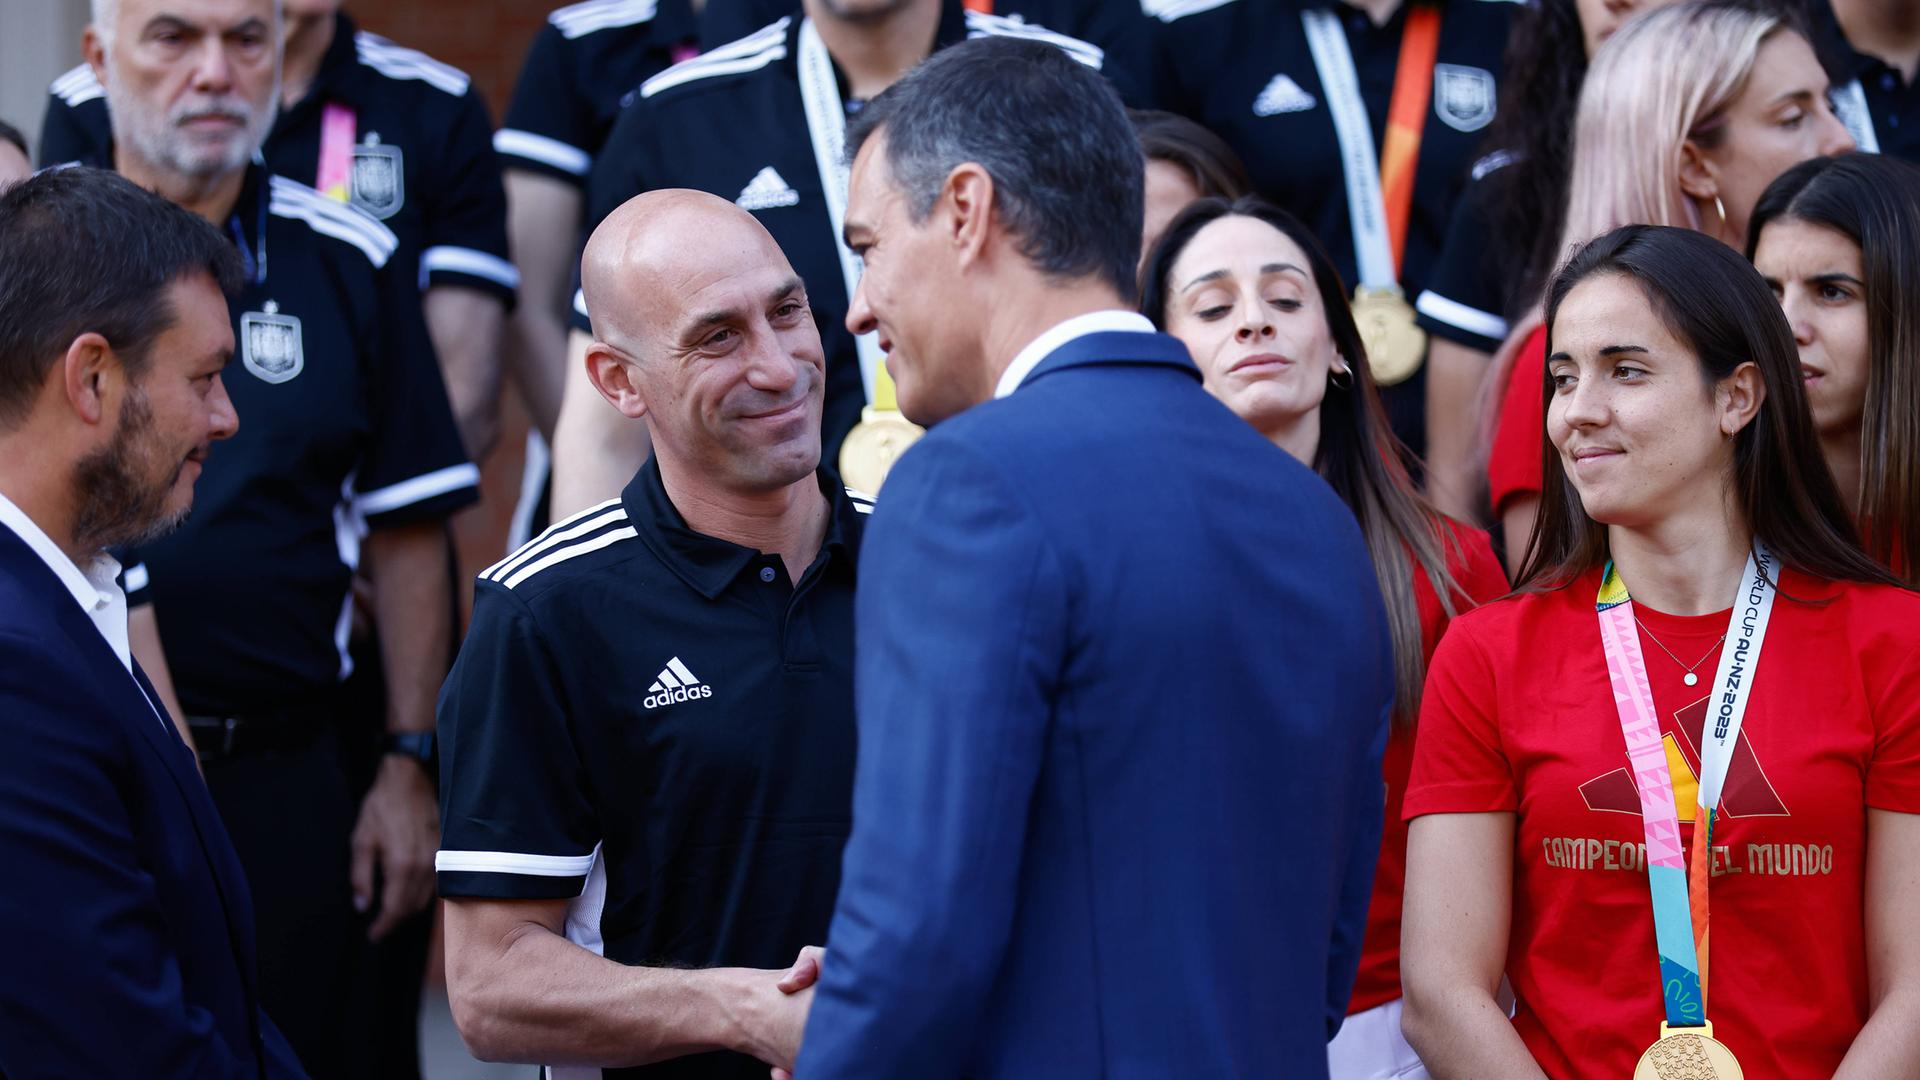 Spaniens Ministerpräsident schüttelt dem Fußball-Verbandspräsidenten Rubiales die Hand, im Hintergrund stehen Spielerinnen.